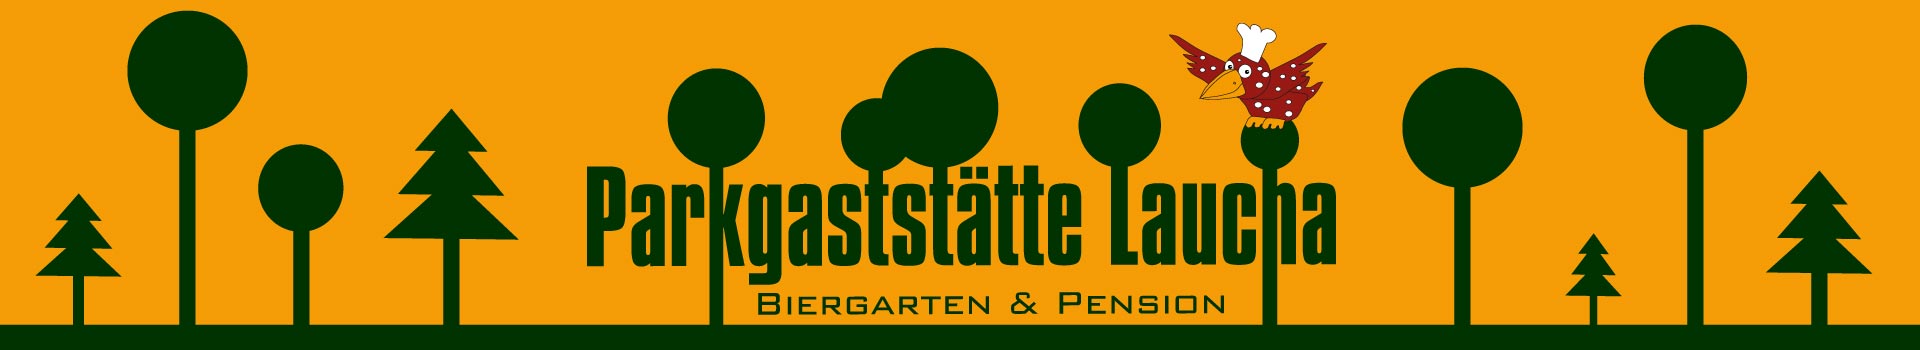 Parkgaststätte Laucha – Biergarten & Pension Logo